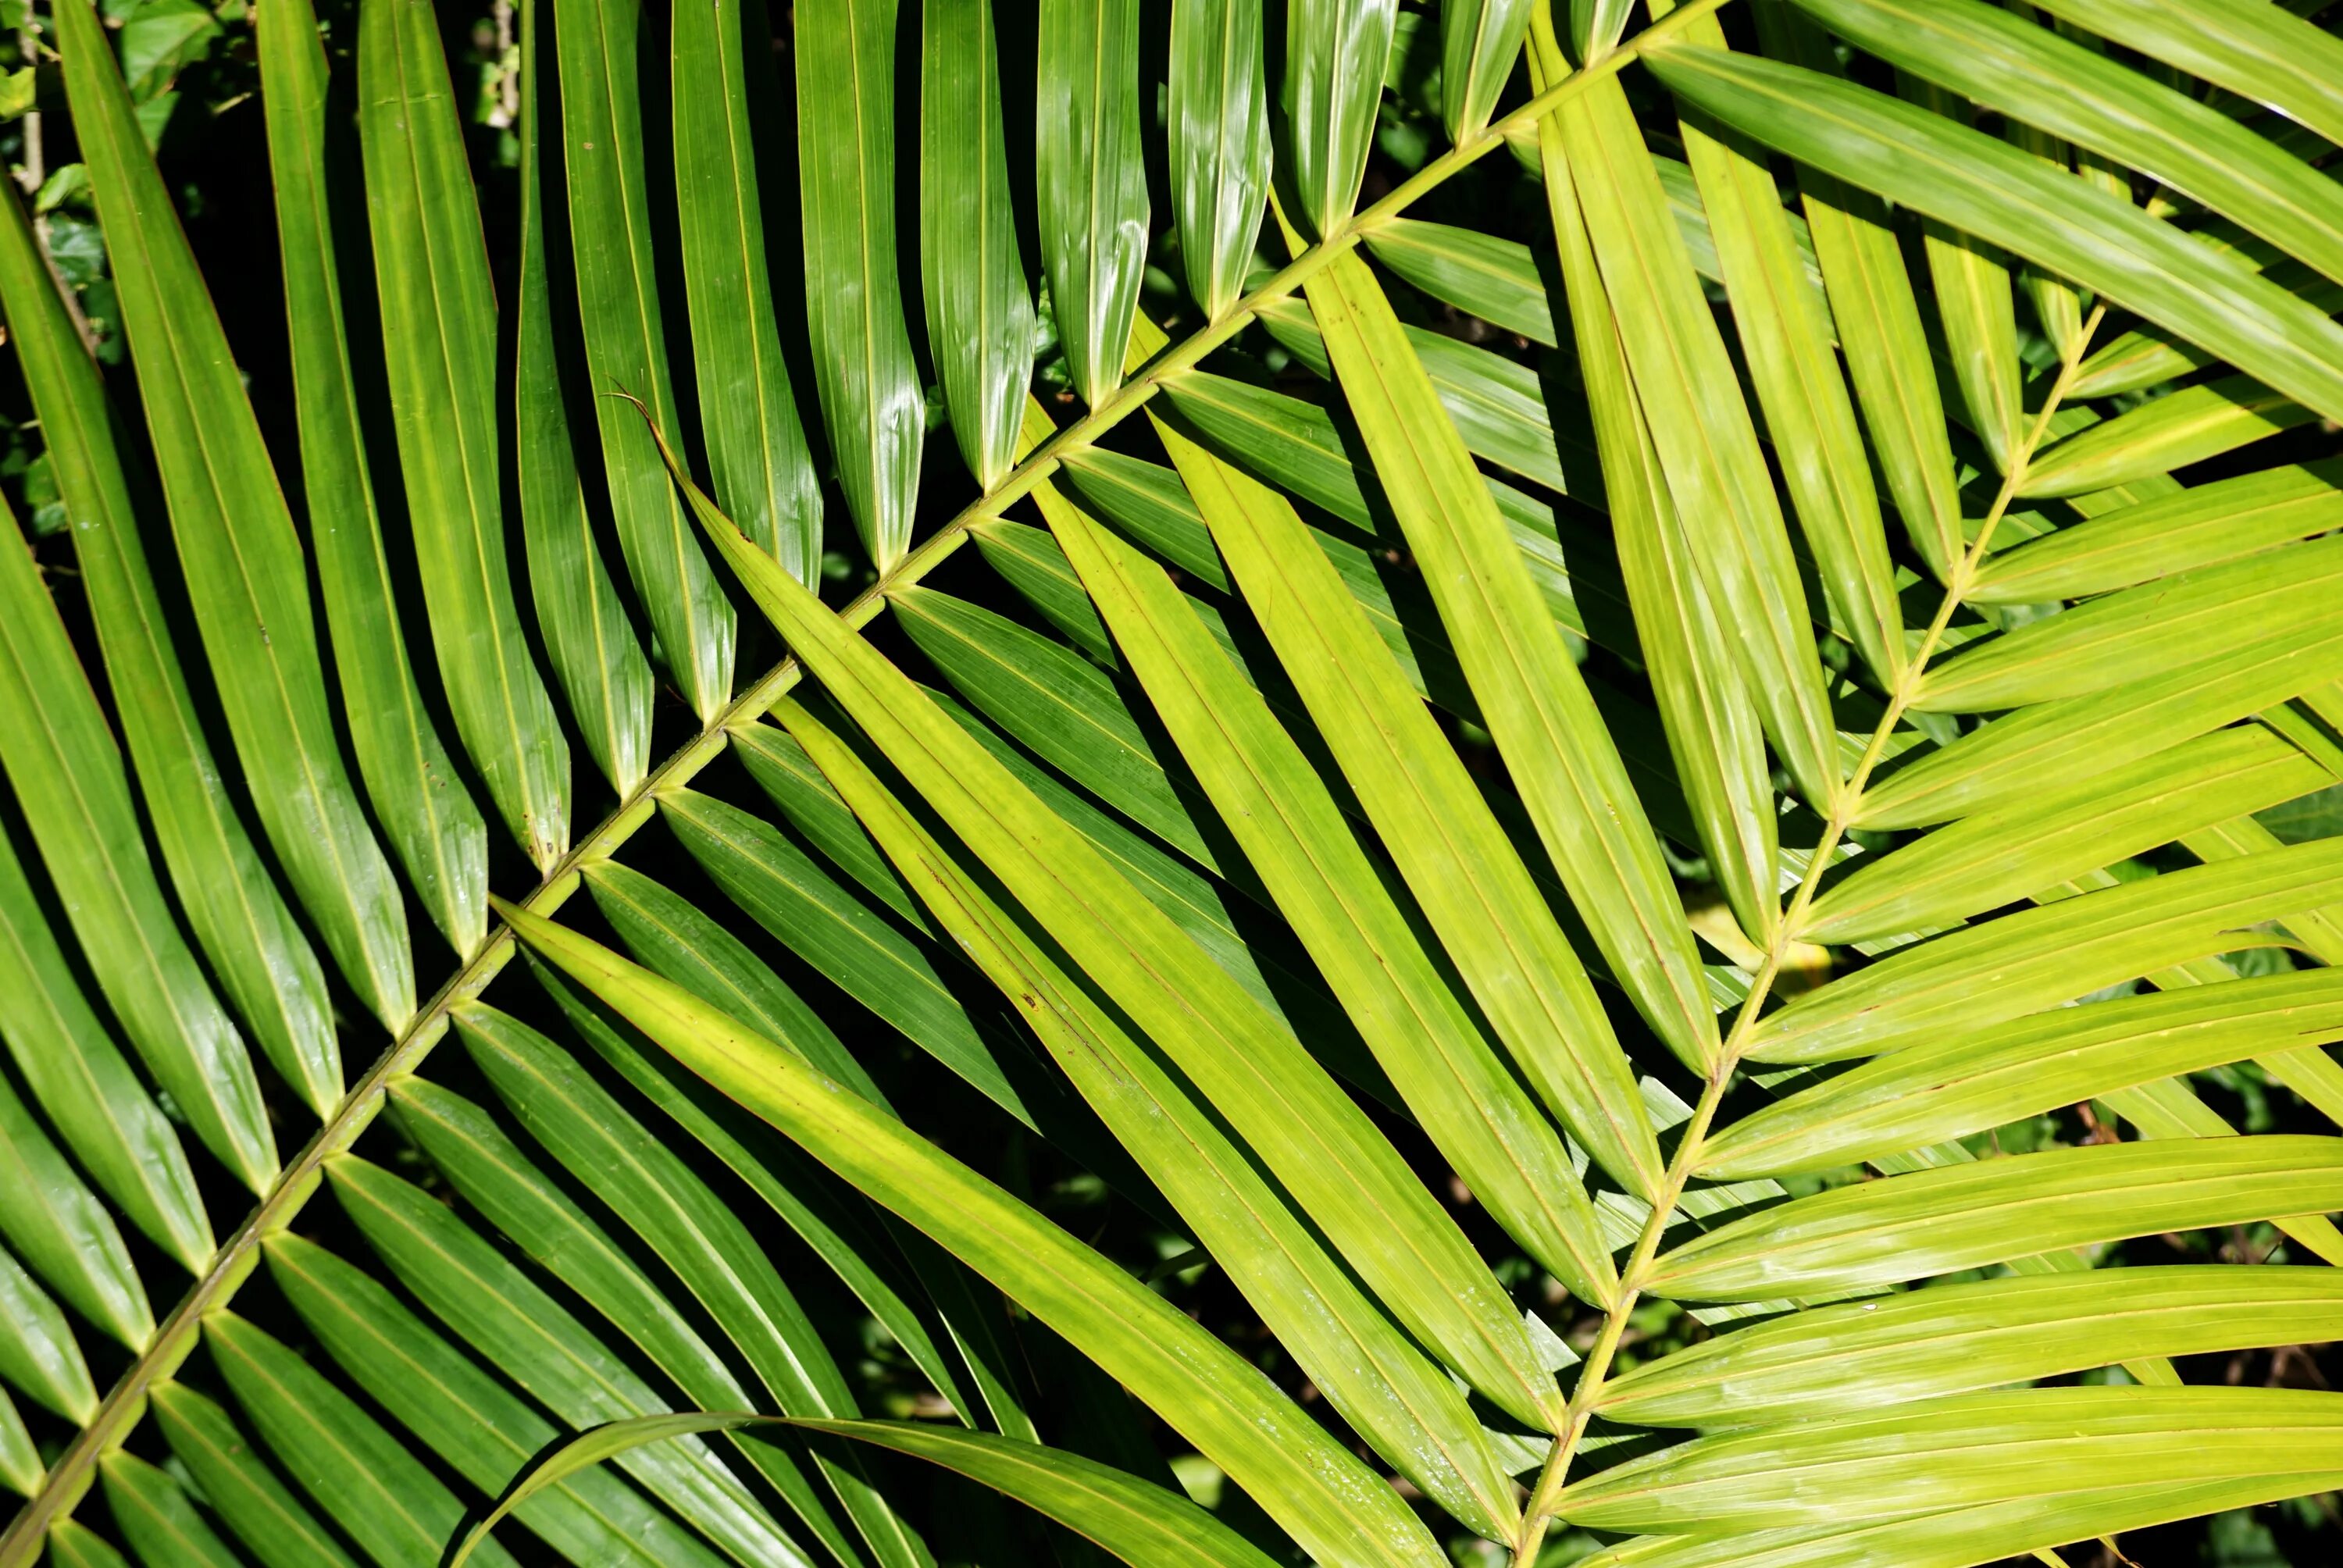 Tropical plant. Пальмовые листья. Подсемейства пальмовых. Тропические листья. Тропический листок.